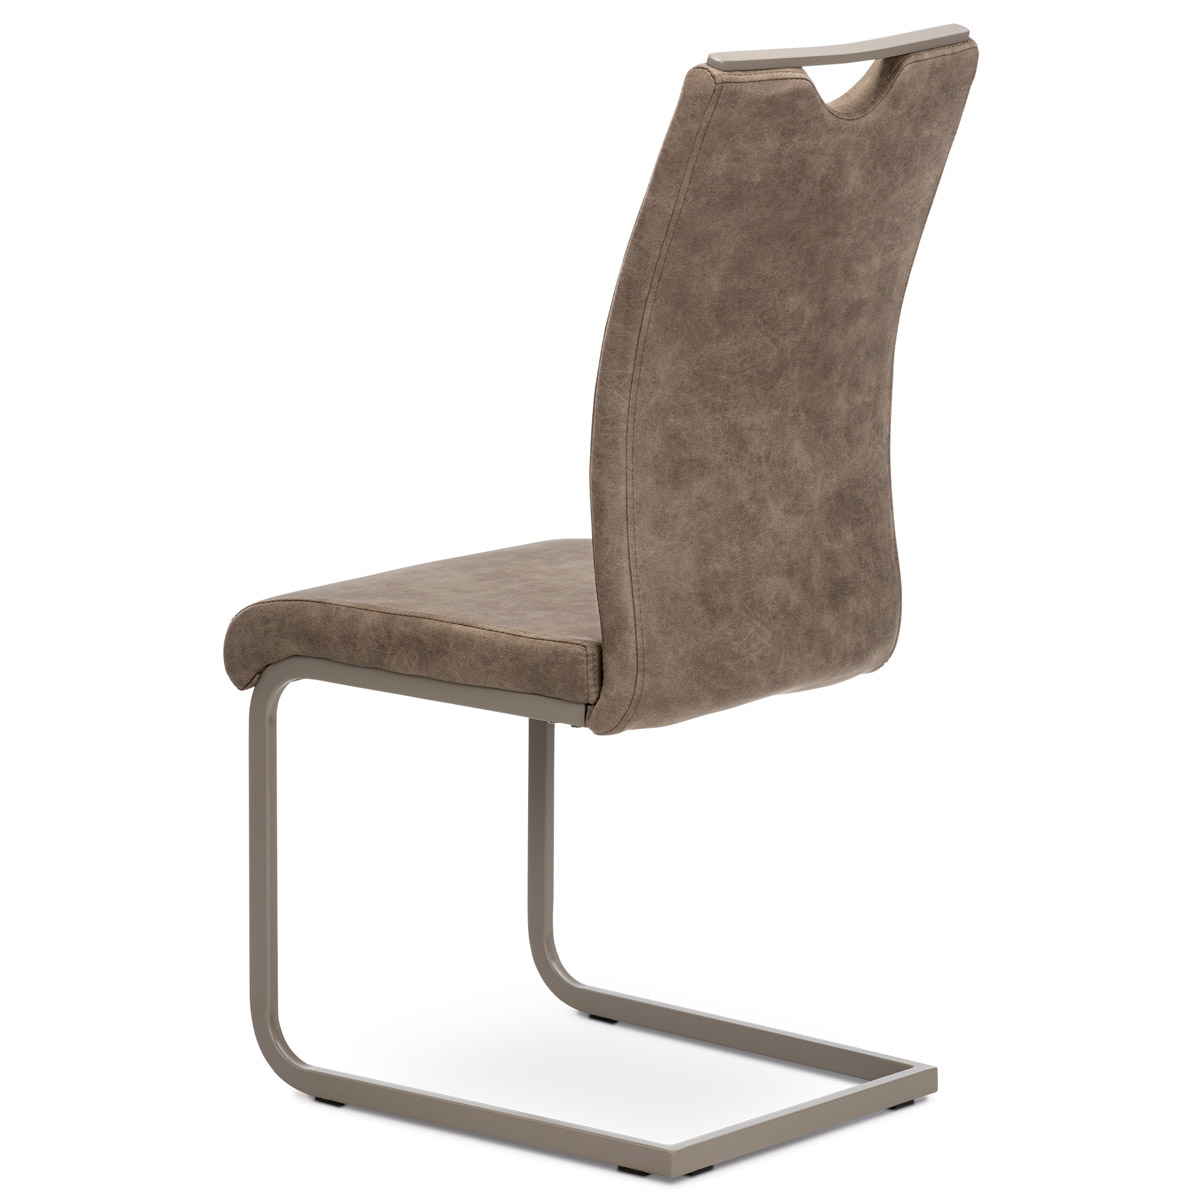 Jídelní židle, lanýžová látka v dekoru vintage kůže, bílé prošití, kov-lanýž.lak